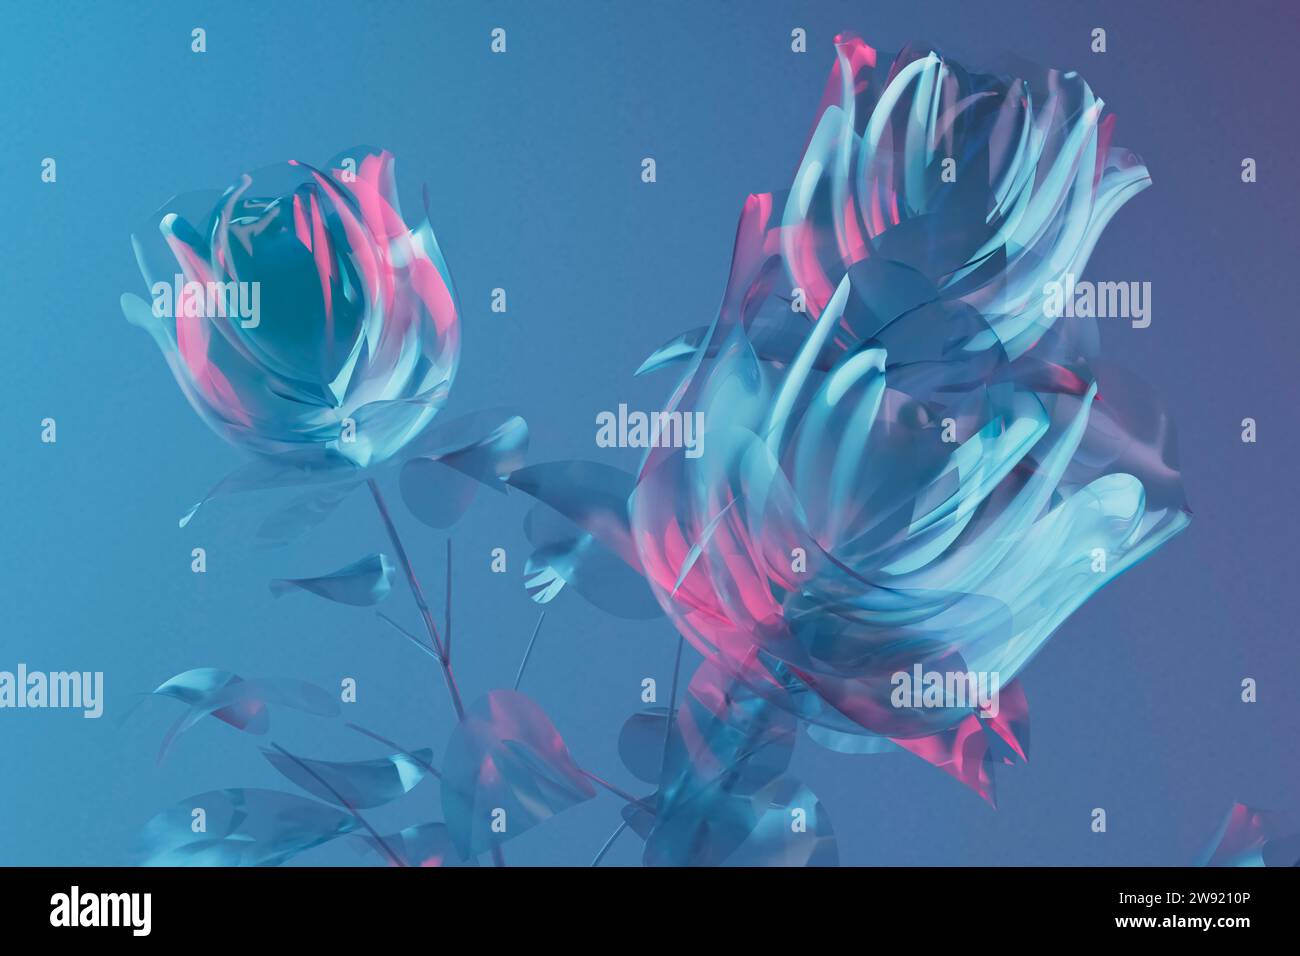 Rappresentazione 3D delle rose in fiore su sfondo blu Foto Stock